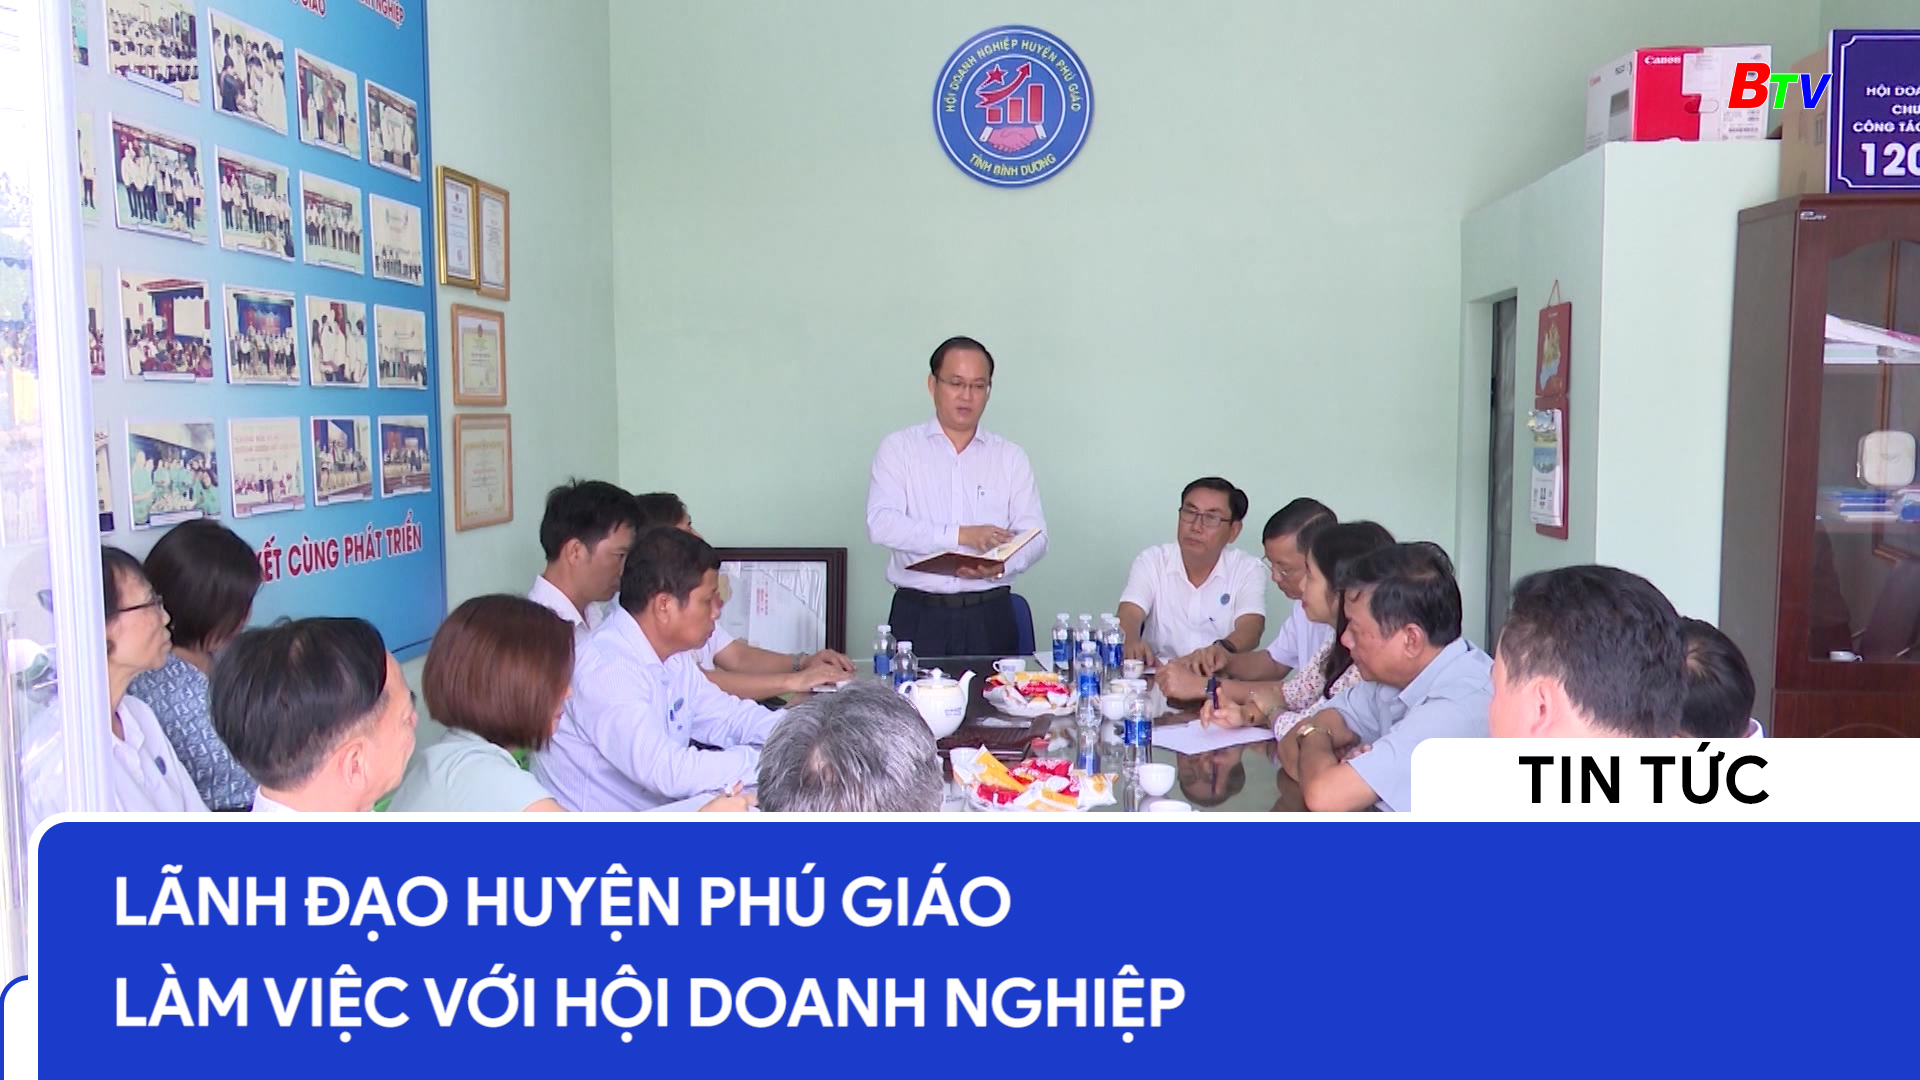 Lãnh đạo huyện Phú Giáo làm việc với hội doanh nghiệp